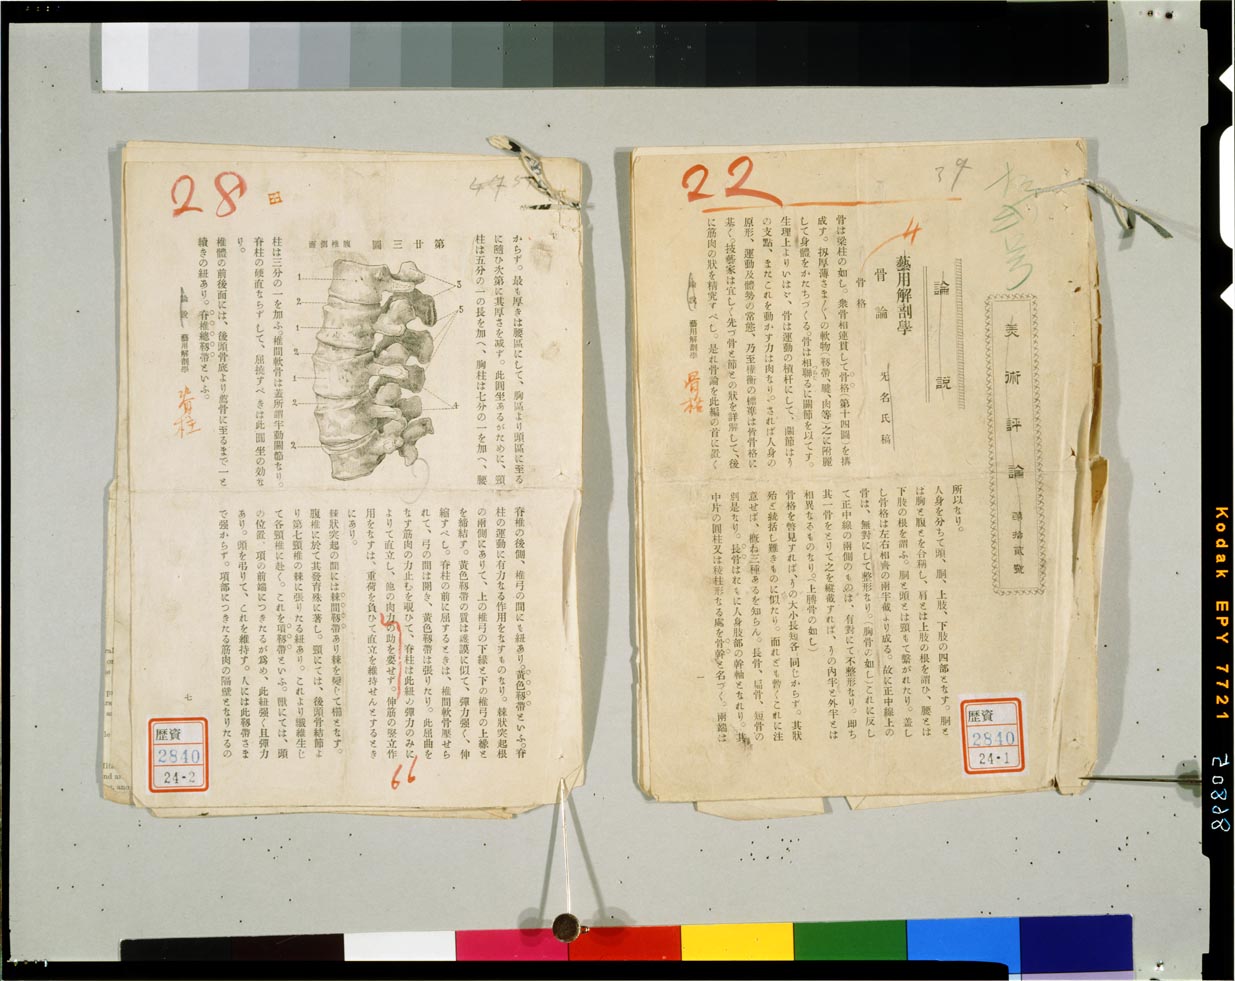 C0086805 芸用解剖学講義草稿等 - 東京国立博物館 画像検索